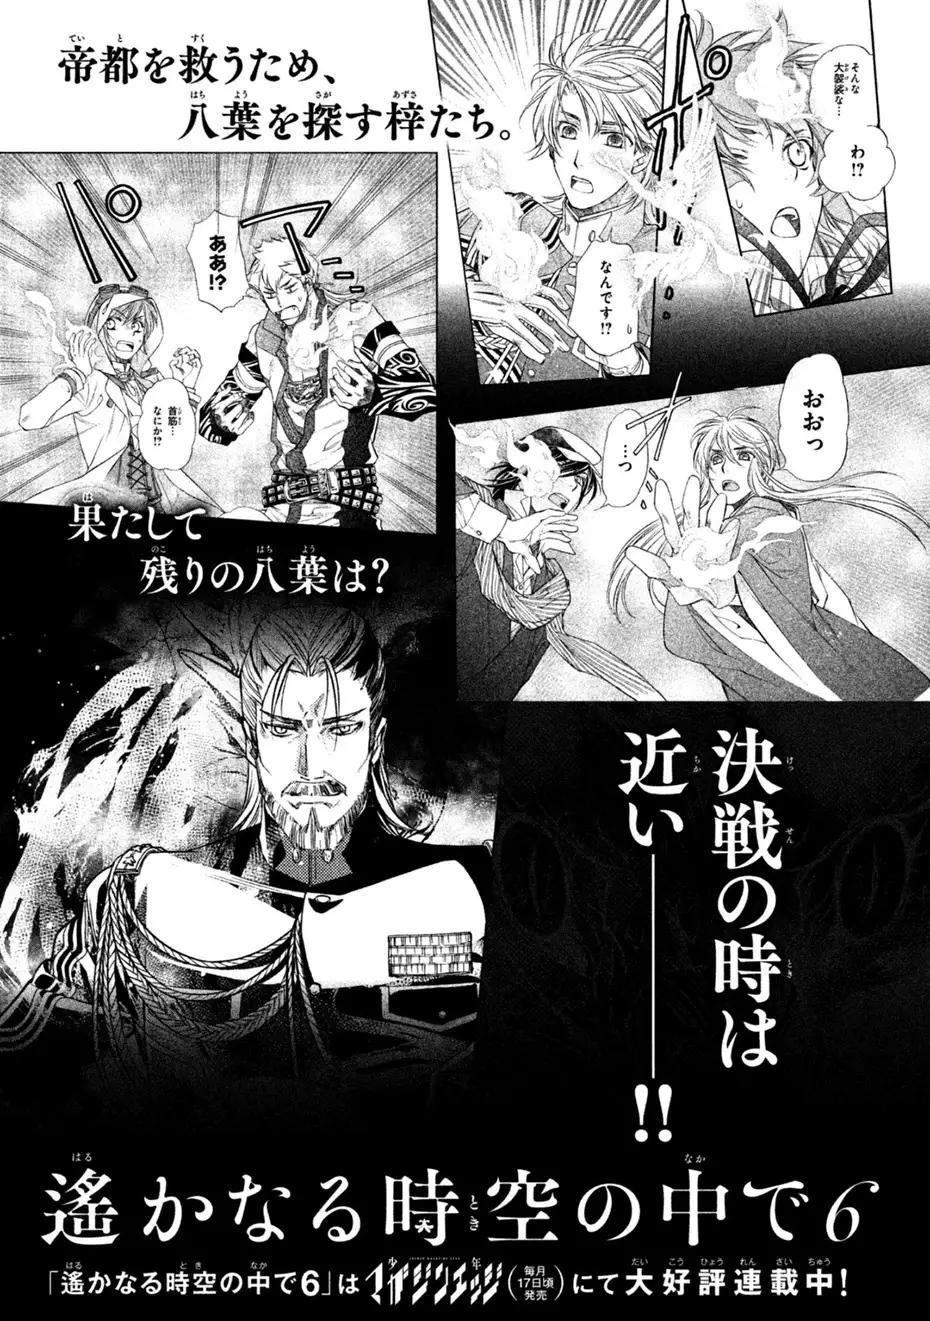 Harukanaru Jikuu No Naka De 6 - 30 page 46-7519fb92